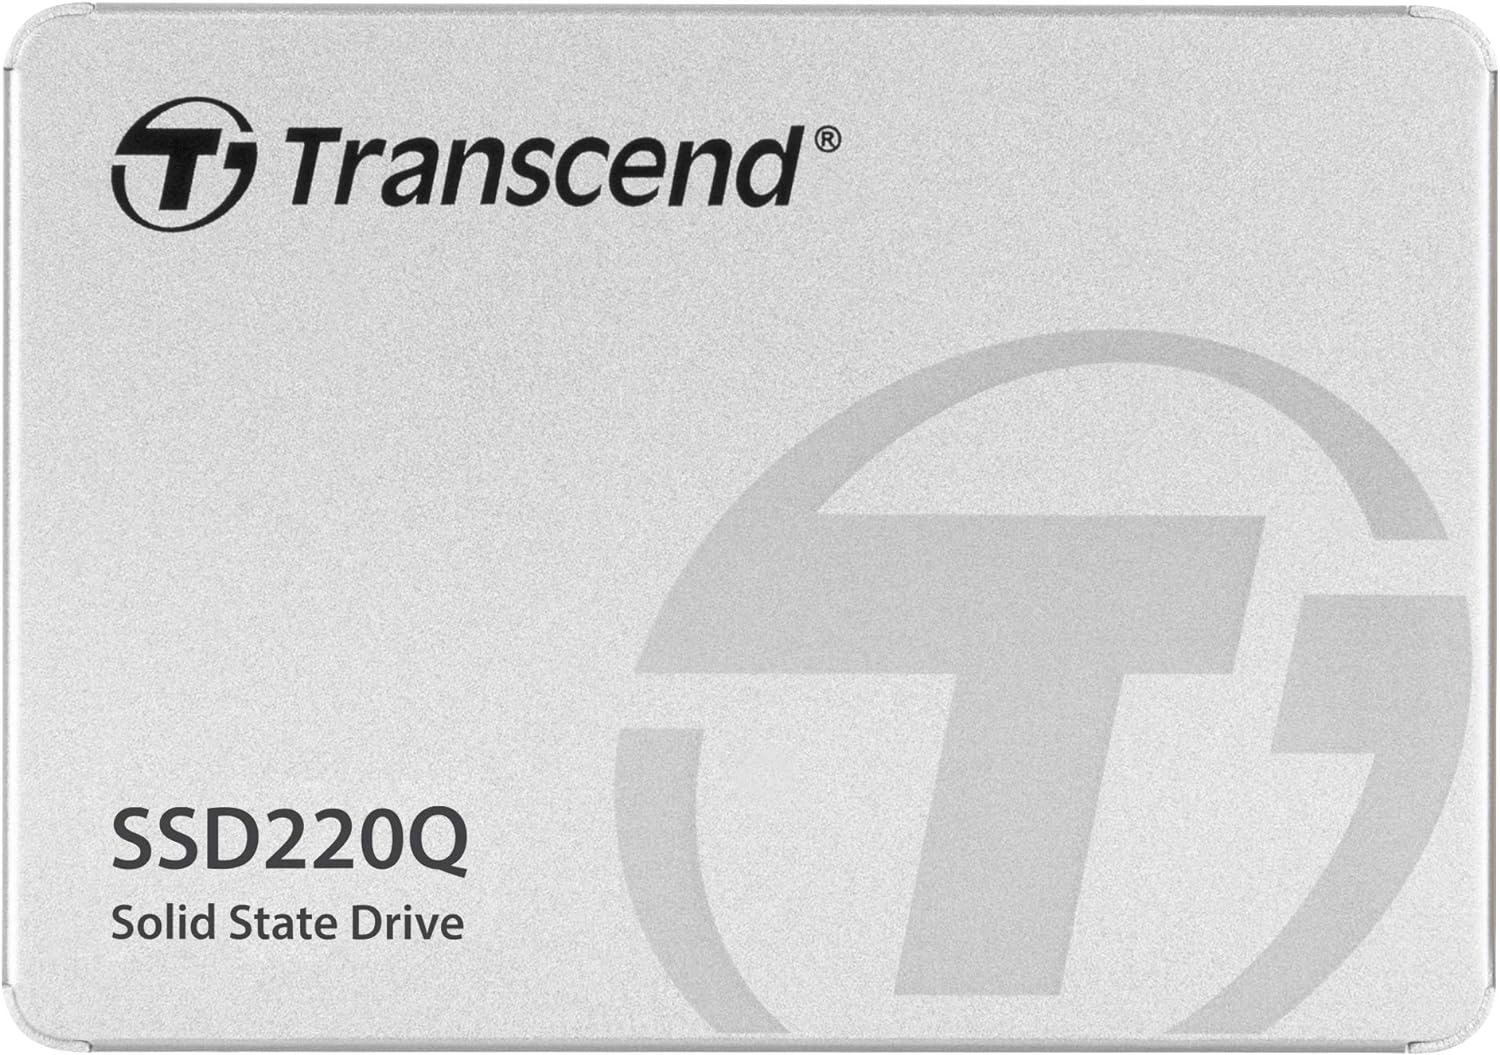 Transcend 2TB SATA III 6Gb/s SSD220Q 2.5” Solid State Drive TS2TSSD220Q